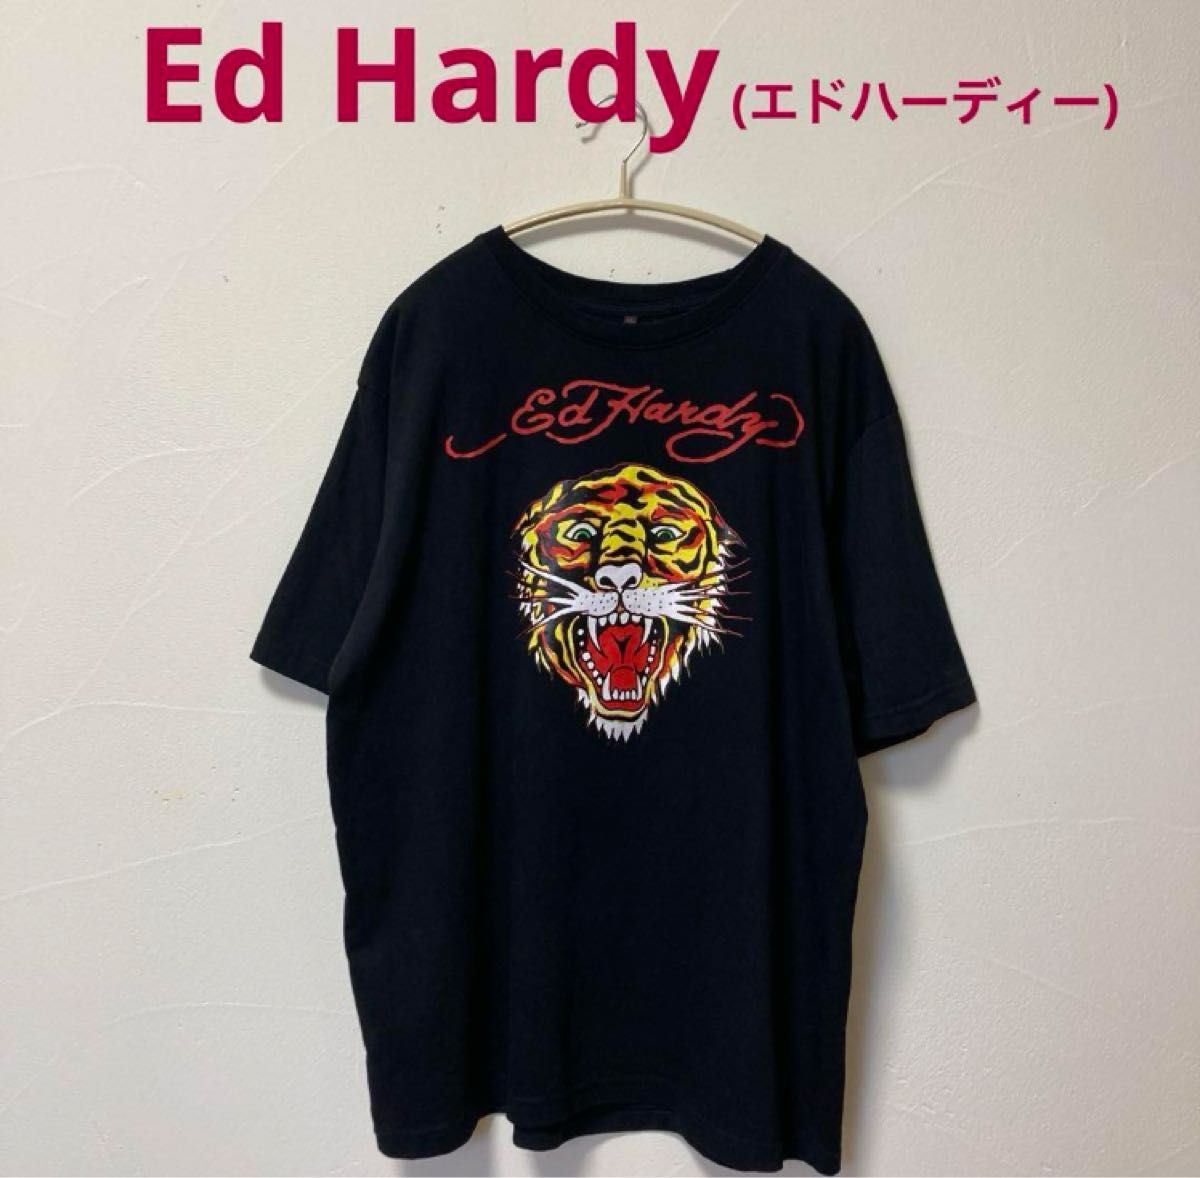 Ed Hardy(エドハーディー)Tシャツ・ブラック